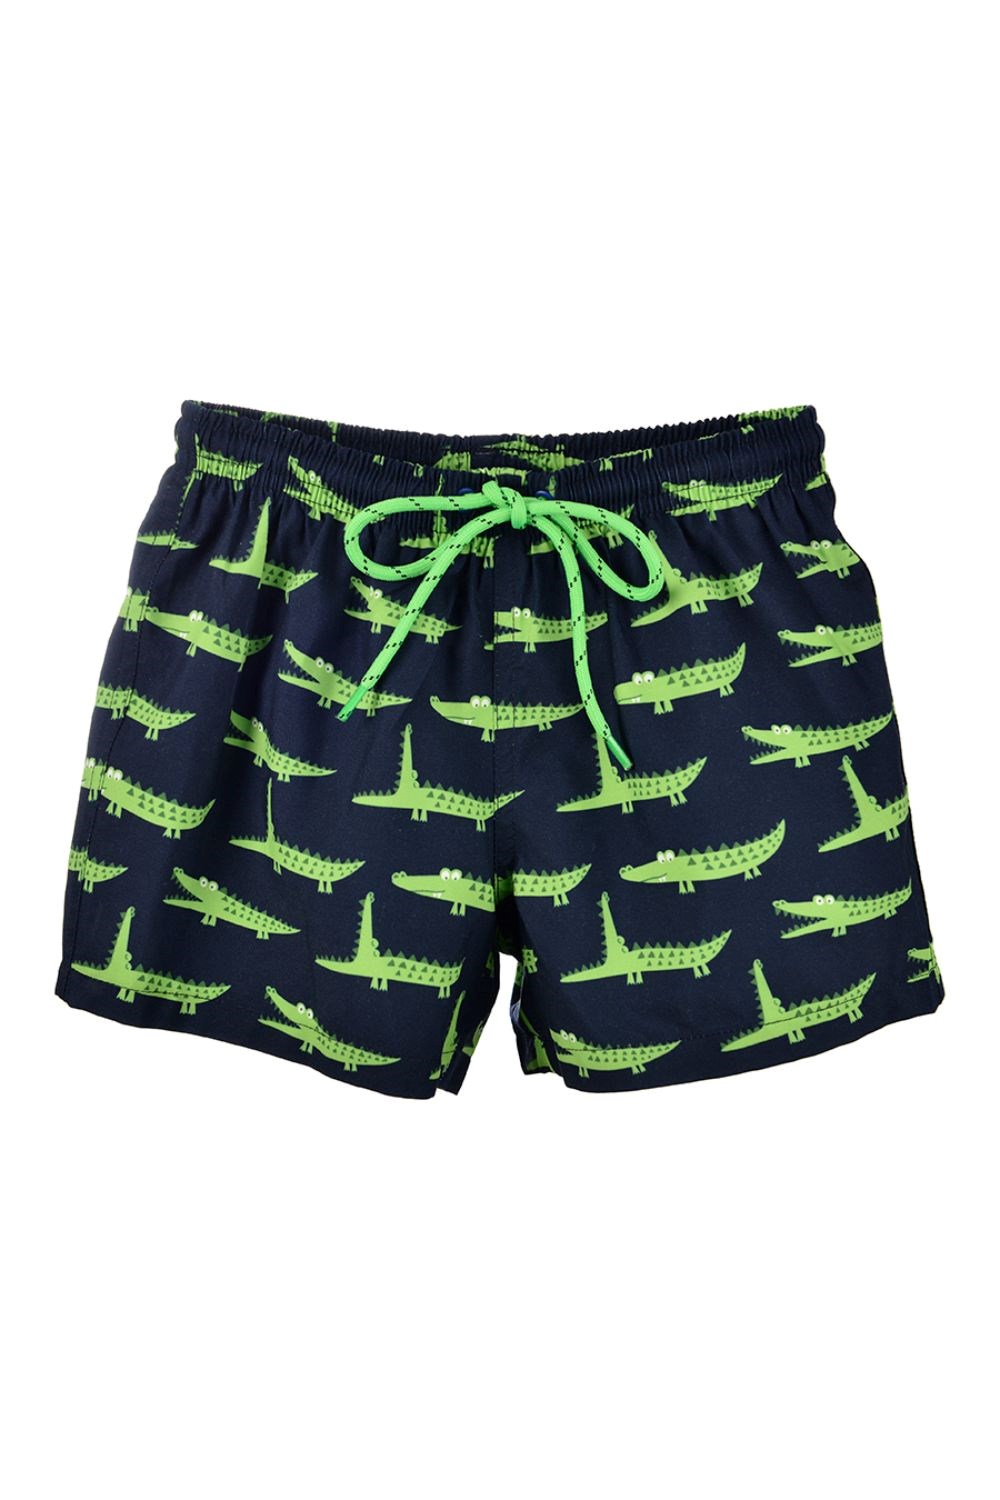 Gator Kids UPF 50+ Swim Shorts -